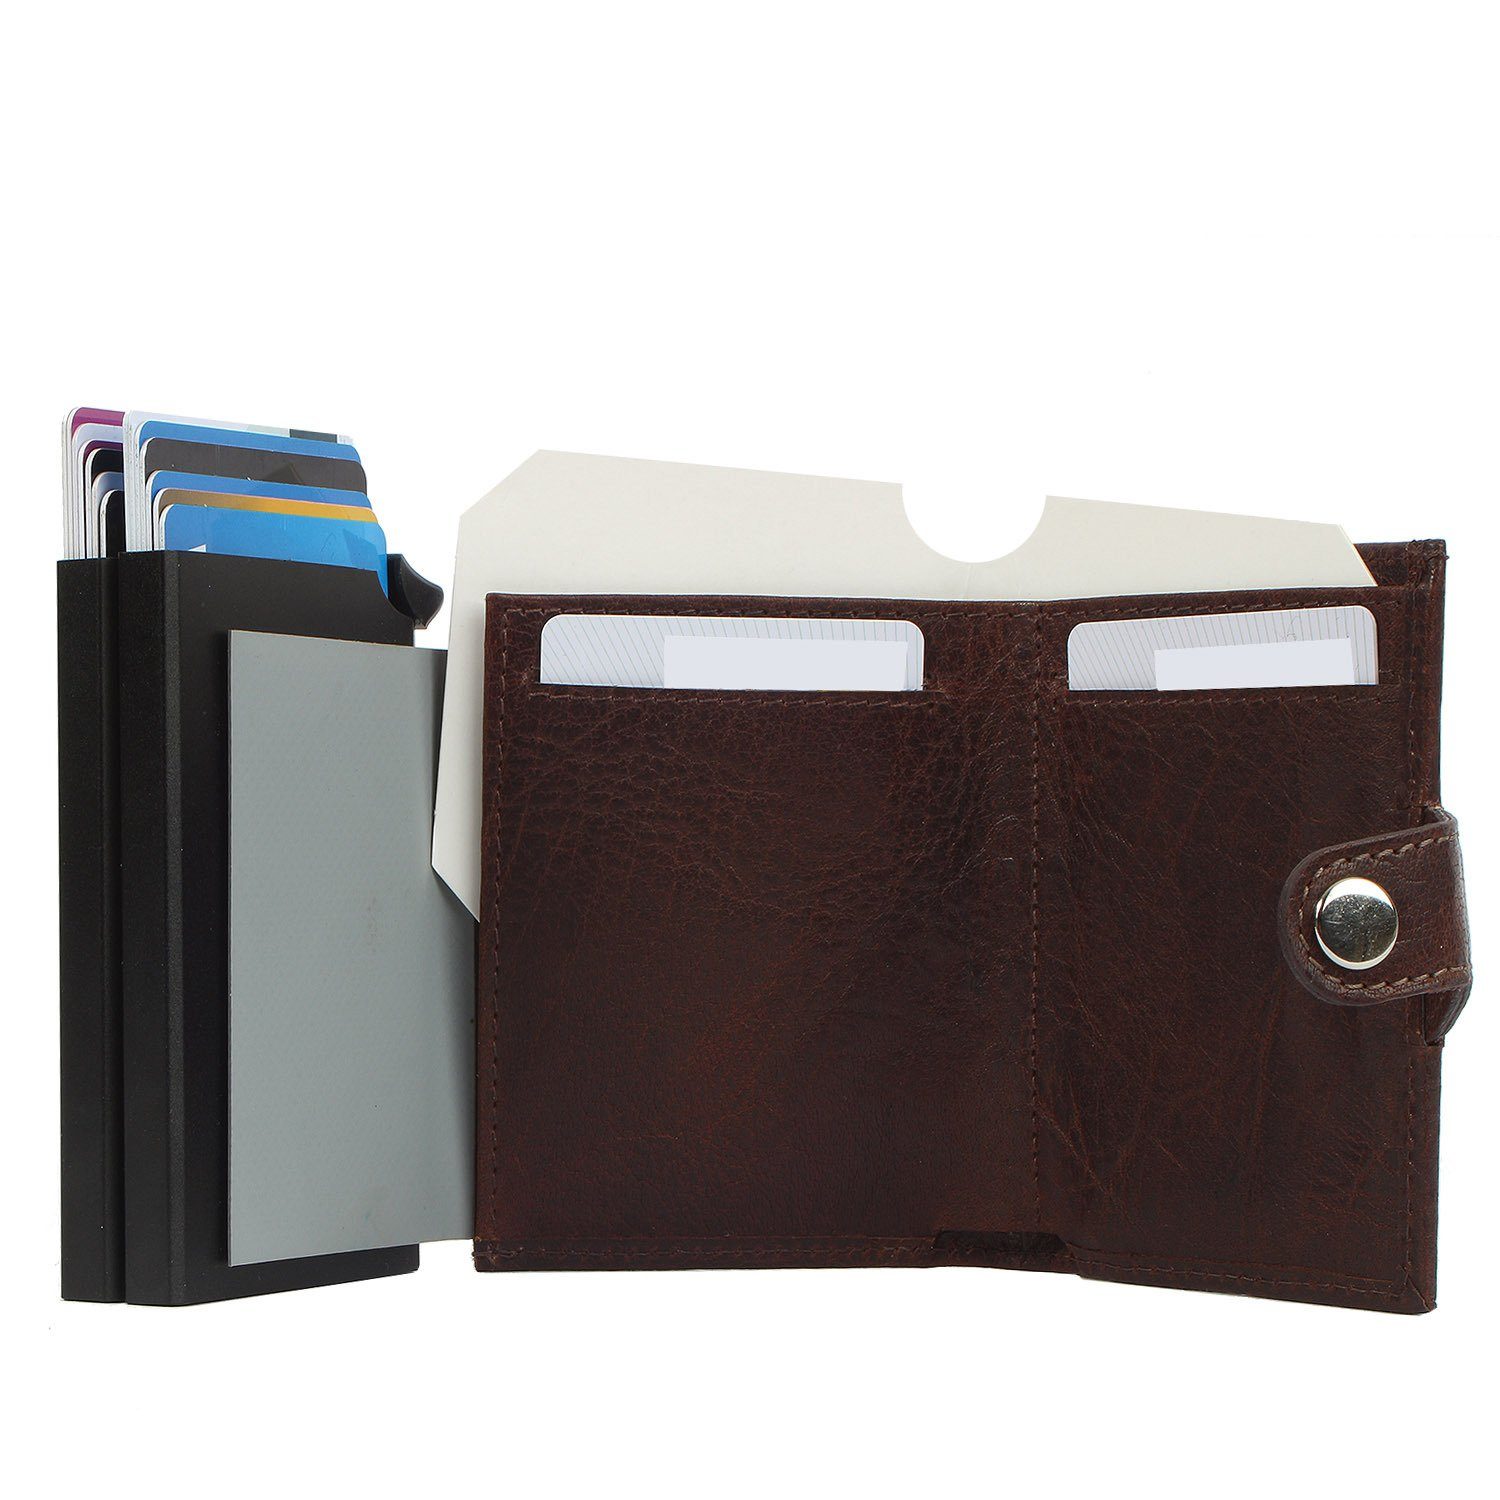 Margelisch Mini Geldbörse noonyu aus RFID leather, Kreditkartenbörse Leder brown Upcycling double